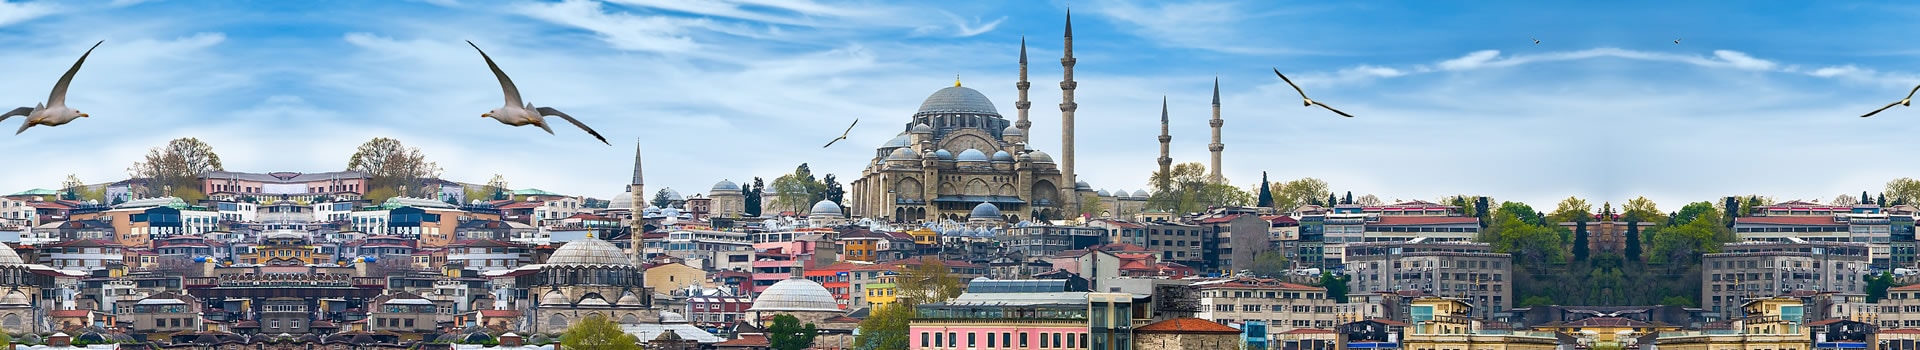 Milão - Istambul